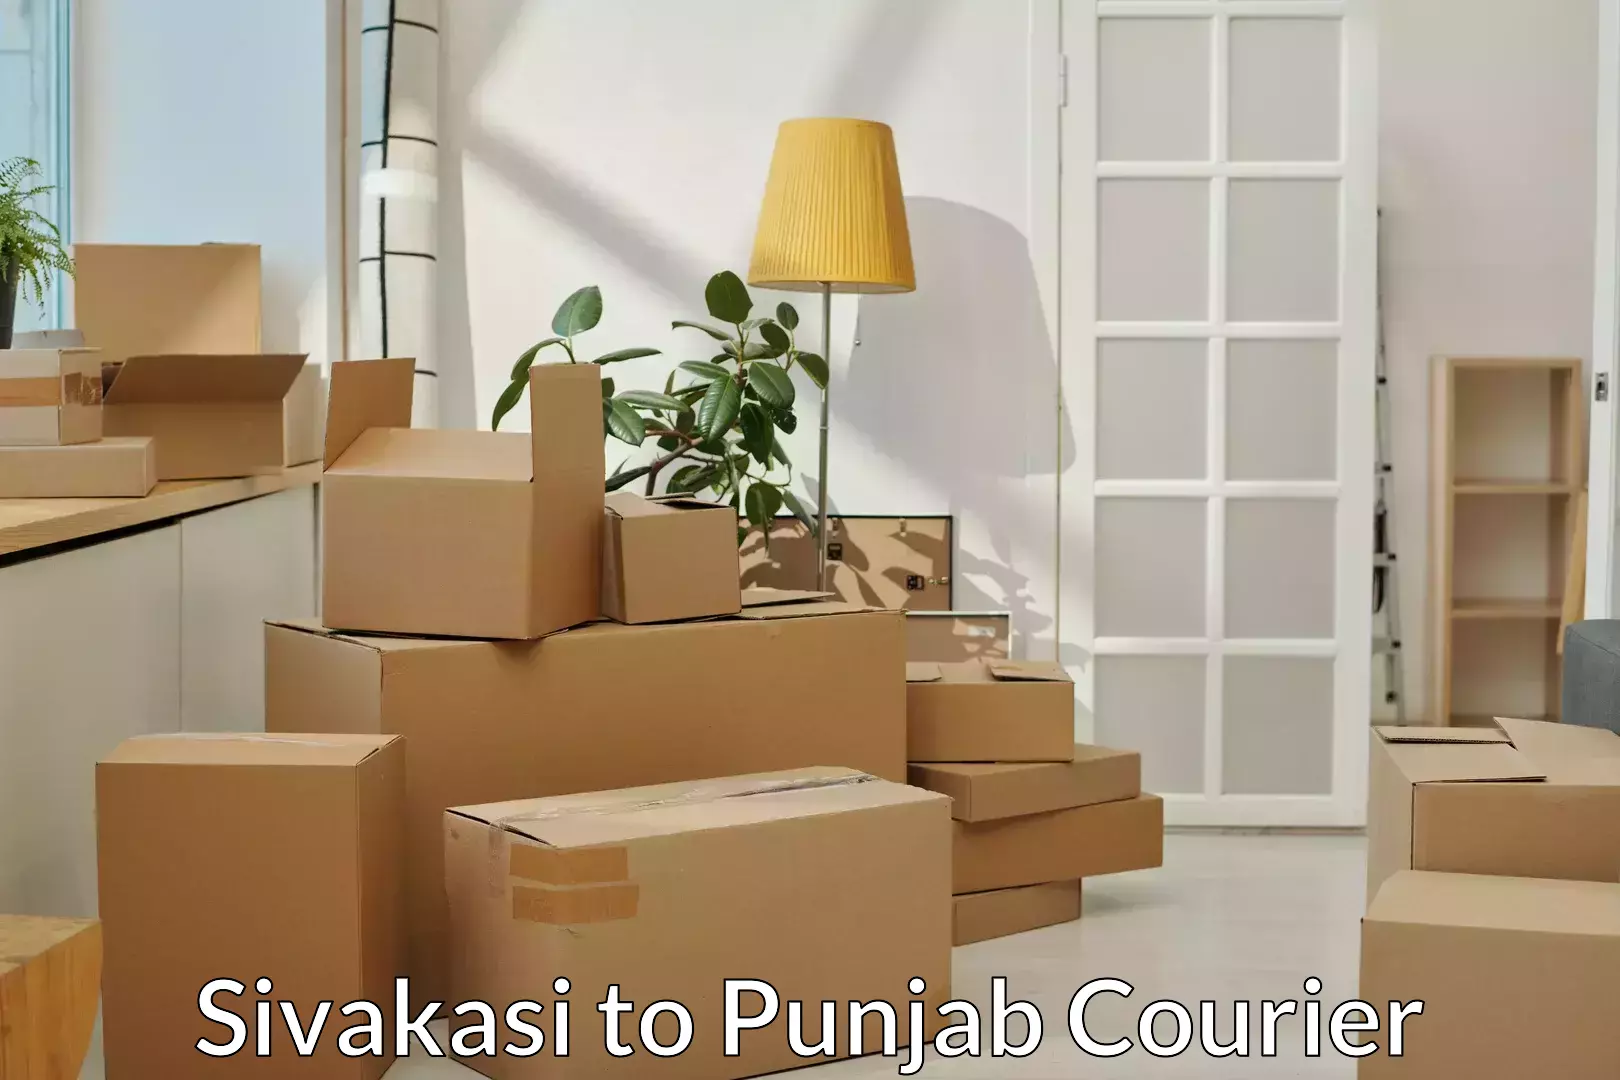 Household goods transport service Sivakasi to Punjab